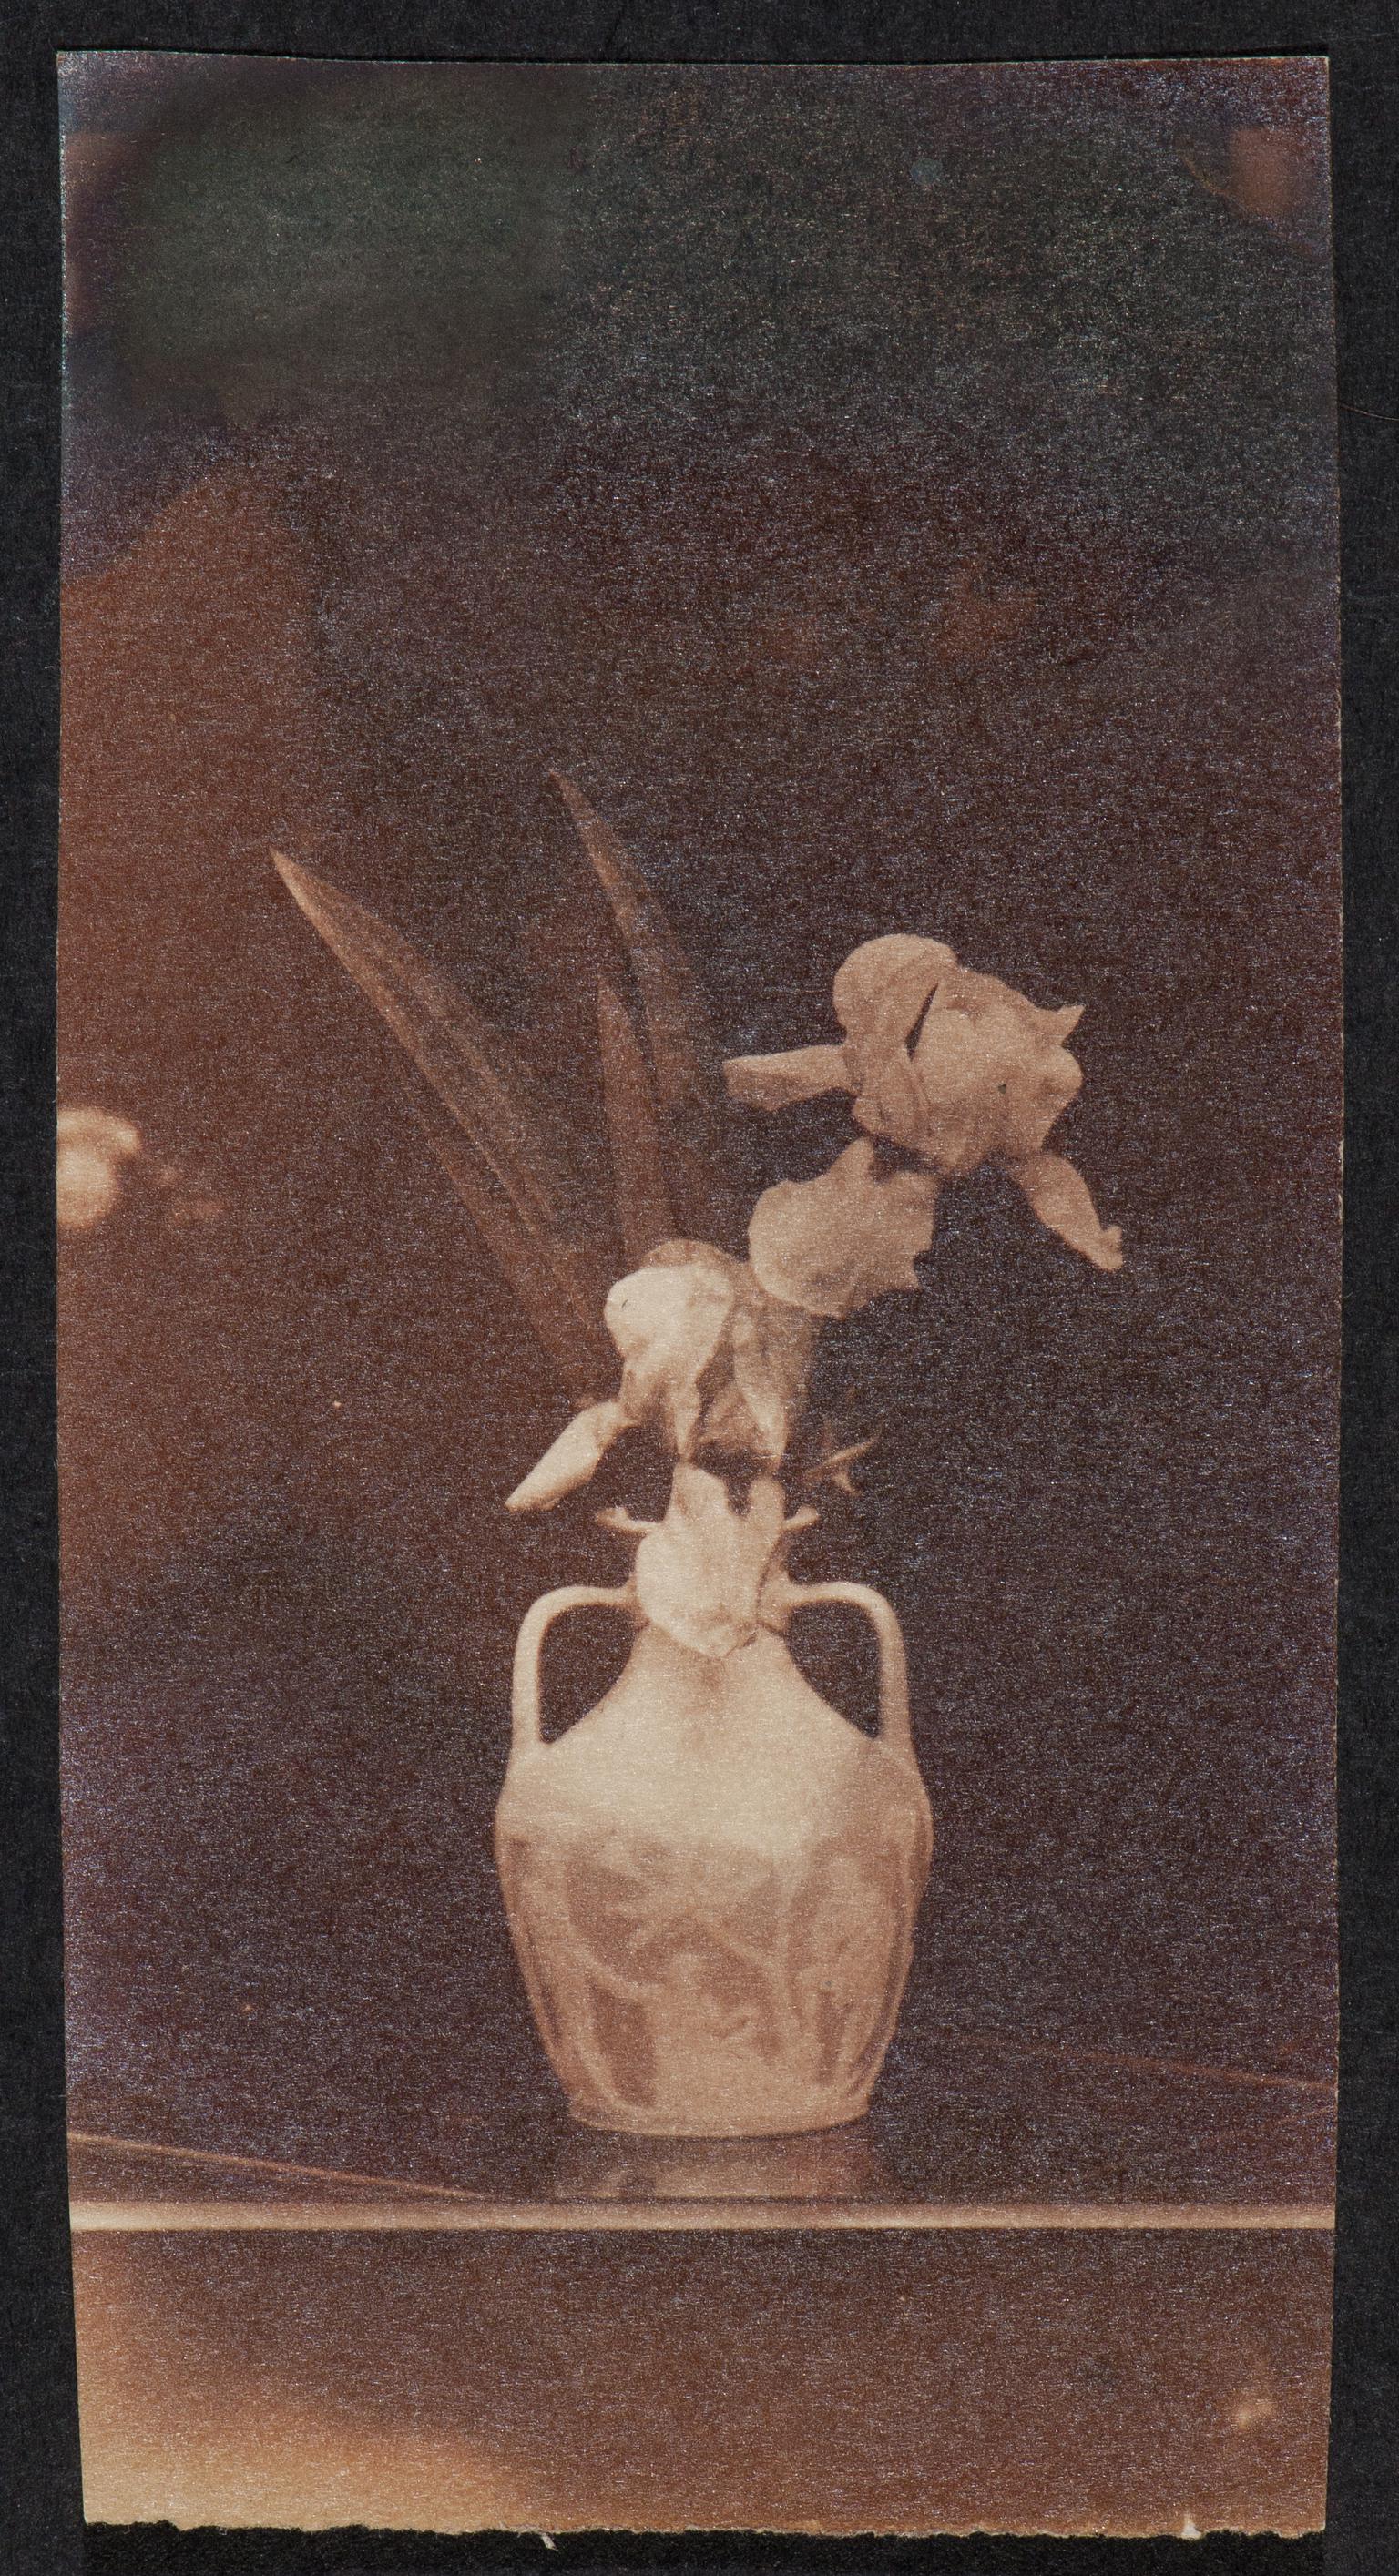 Vase of iris, photograph